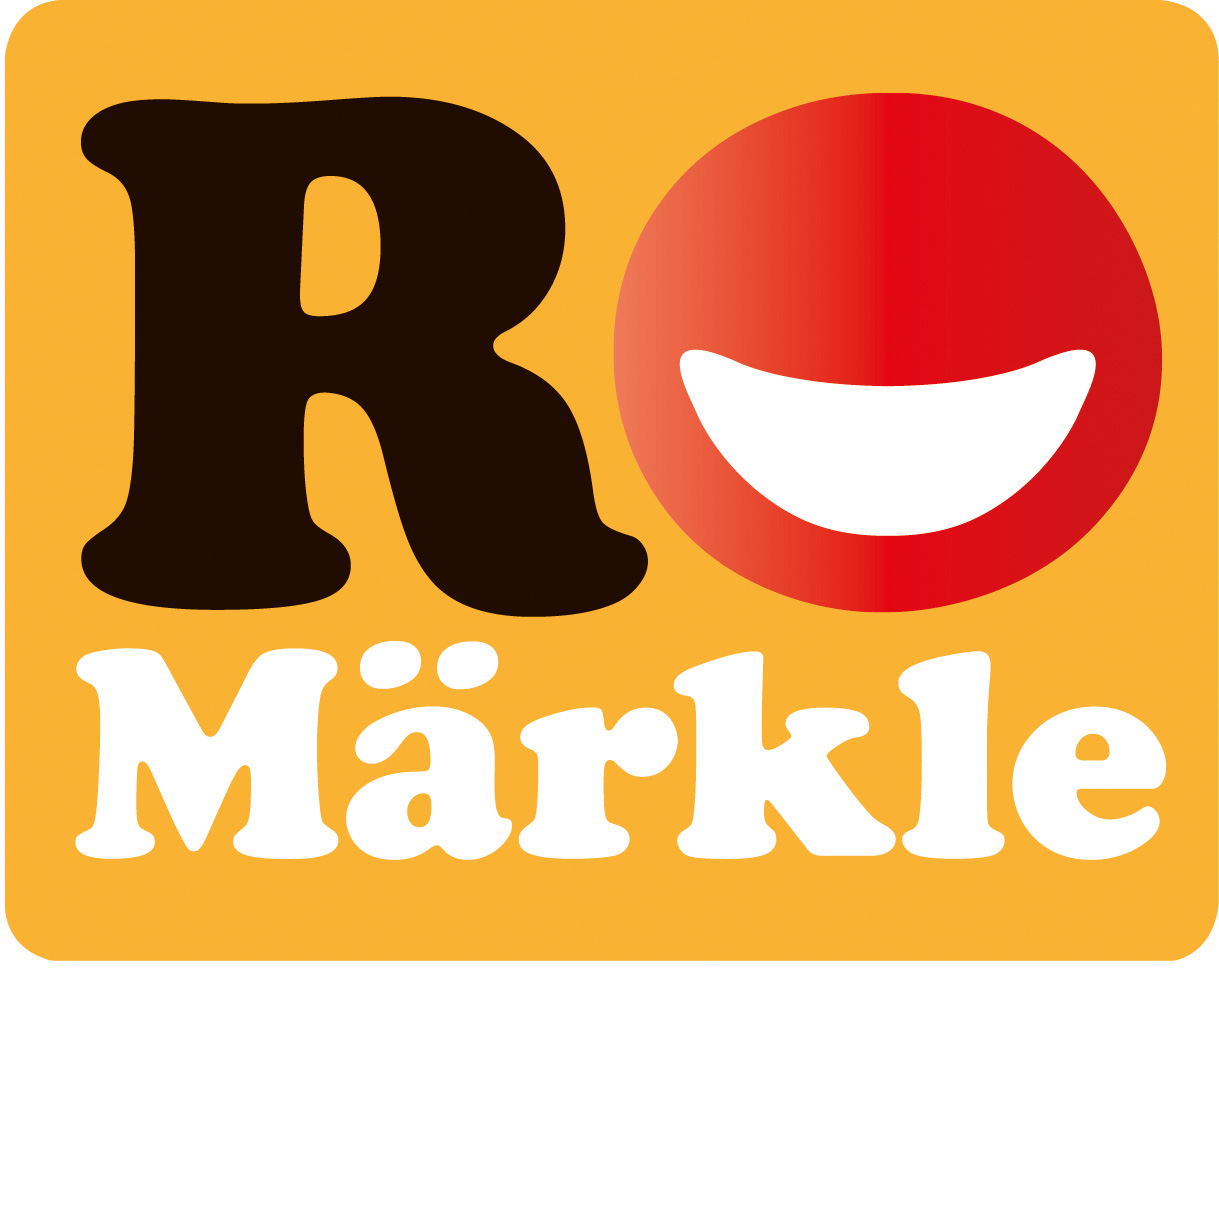 RoMärkle Logo